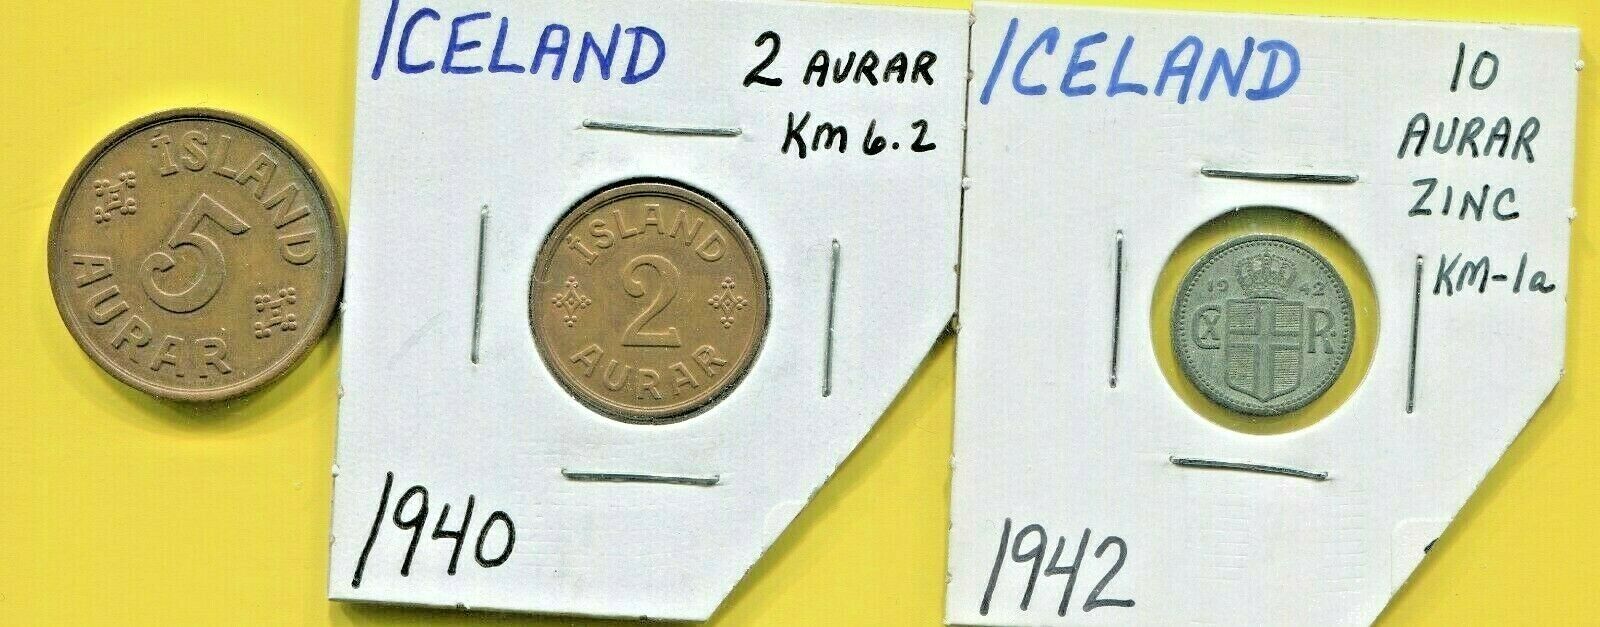 Iceland - Three Beautiful Historical 1940's Coins, 2 Aurar, 5 Aurar & 10 Aurar